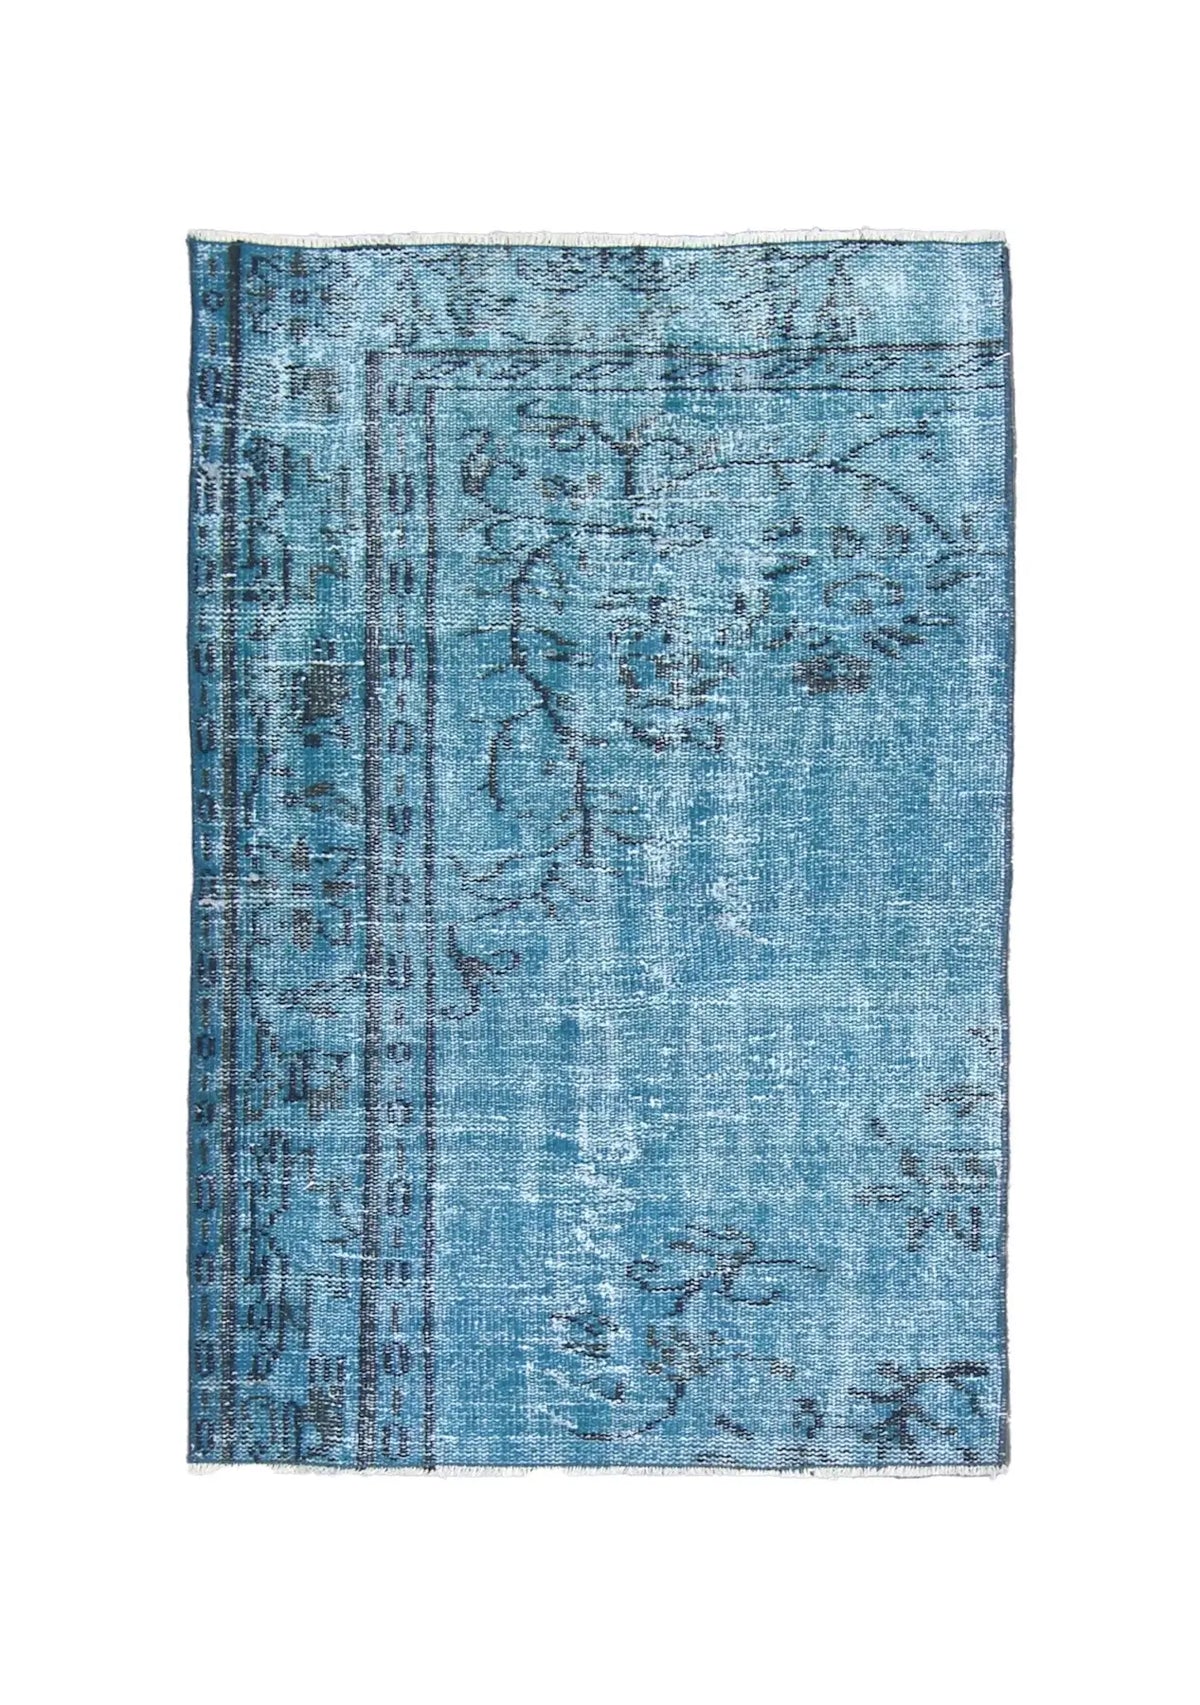 Ailani - Vintage Blue Overdyed Rug - kudenrugs